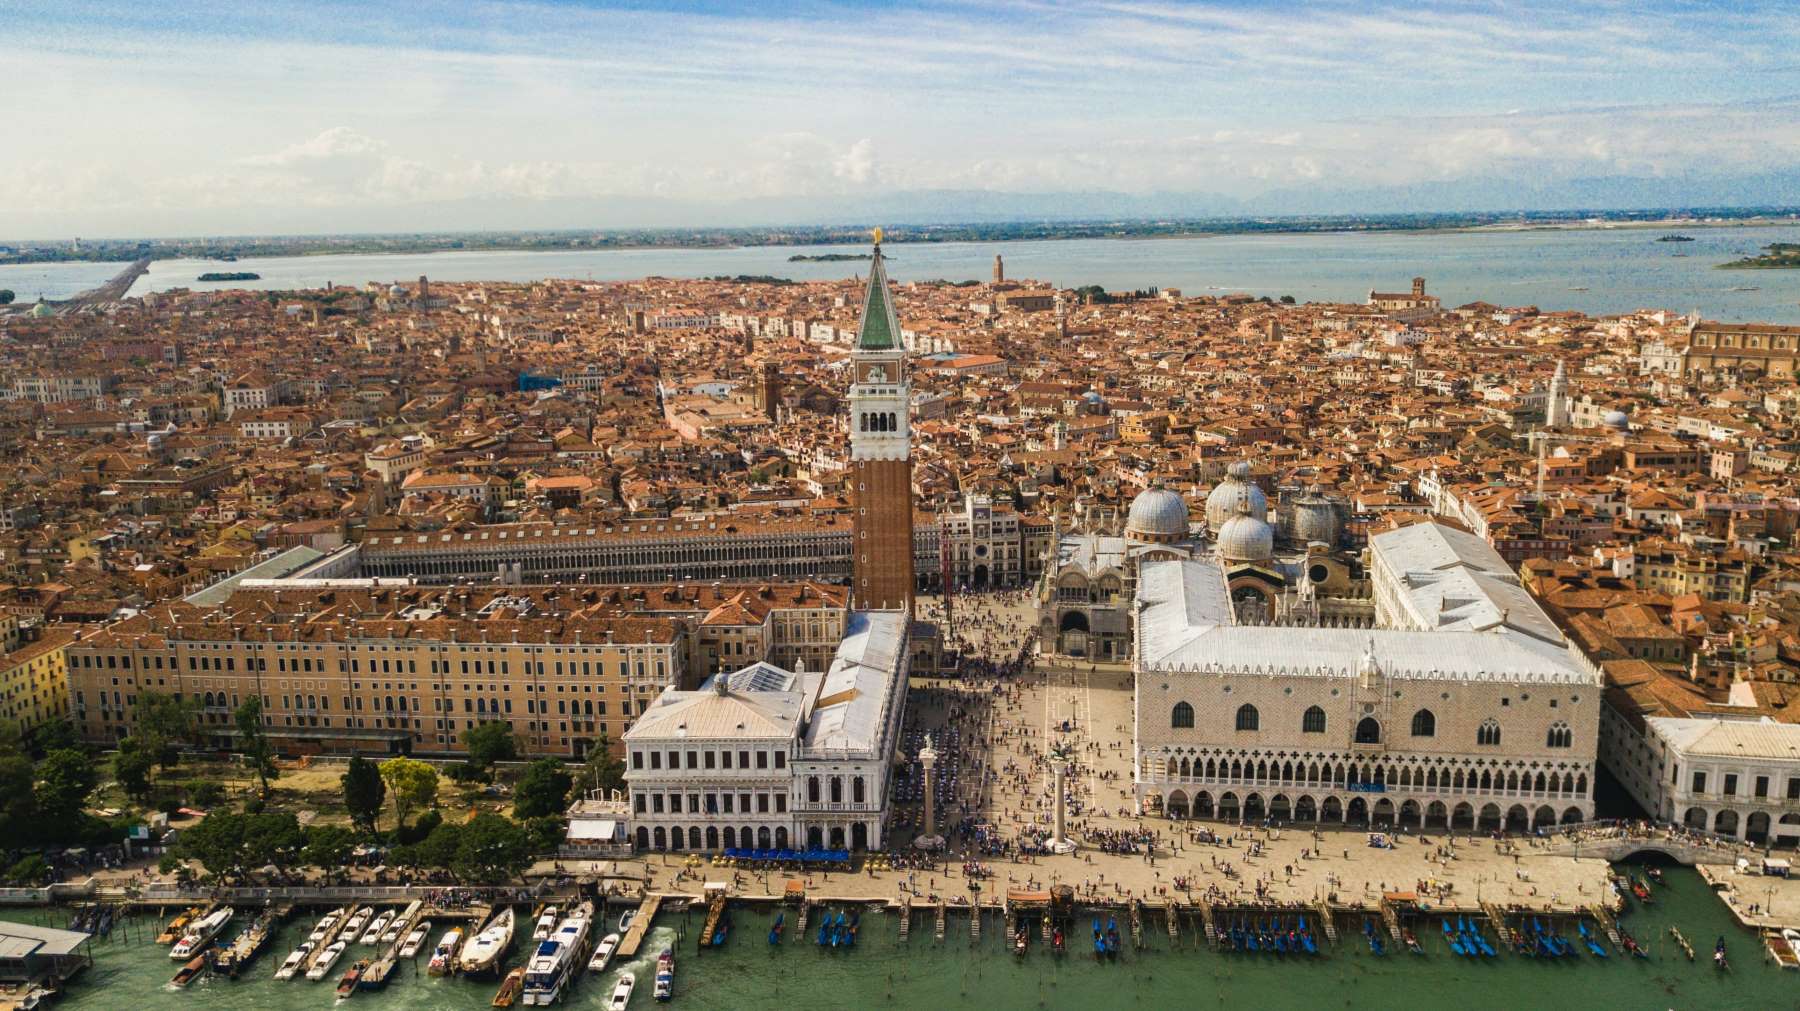 Smukke Udsigtspunkter i Venedig - cover - Rejs Dig Lykkelig